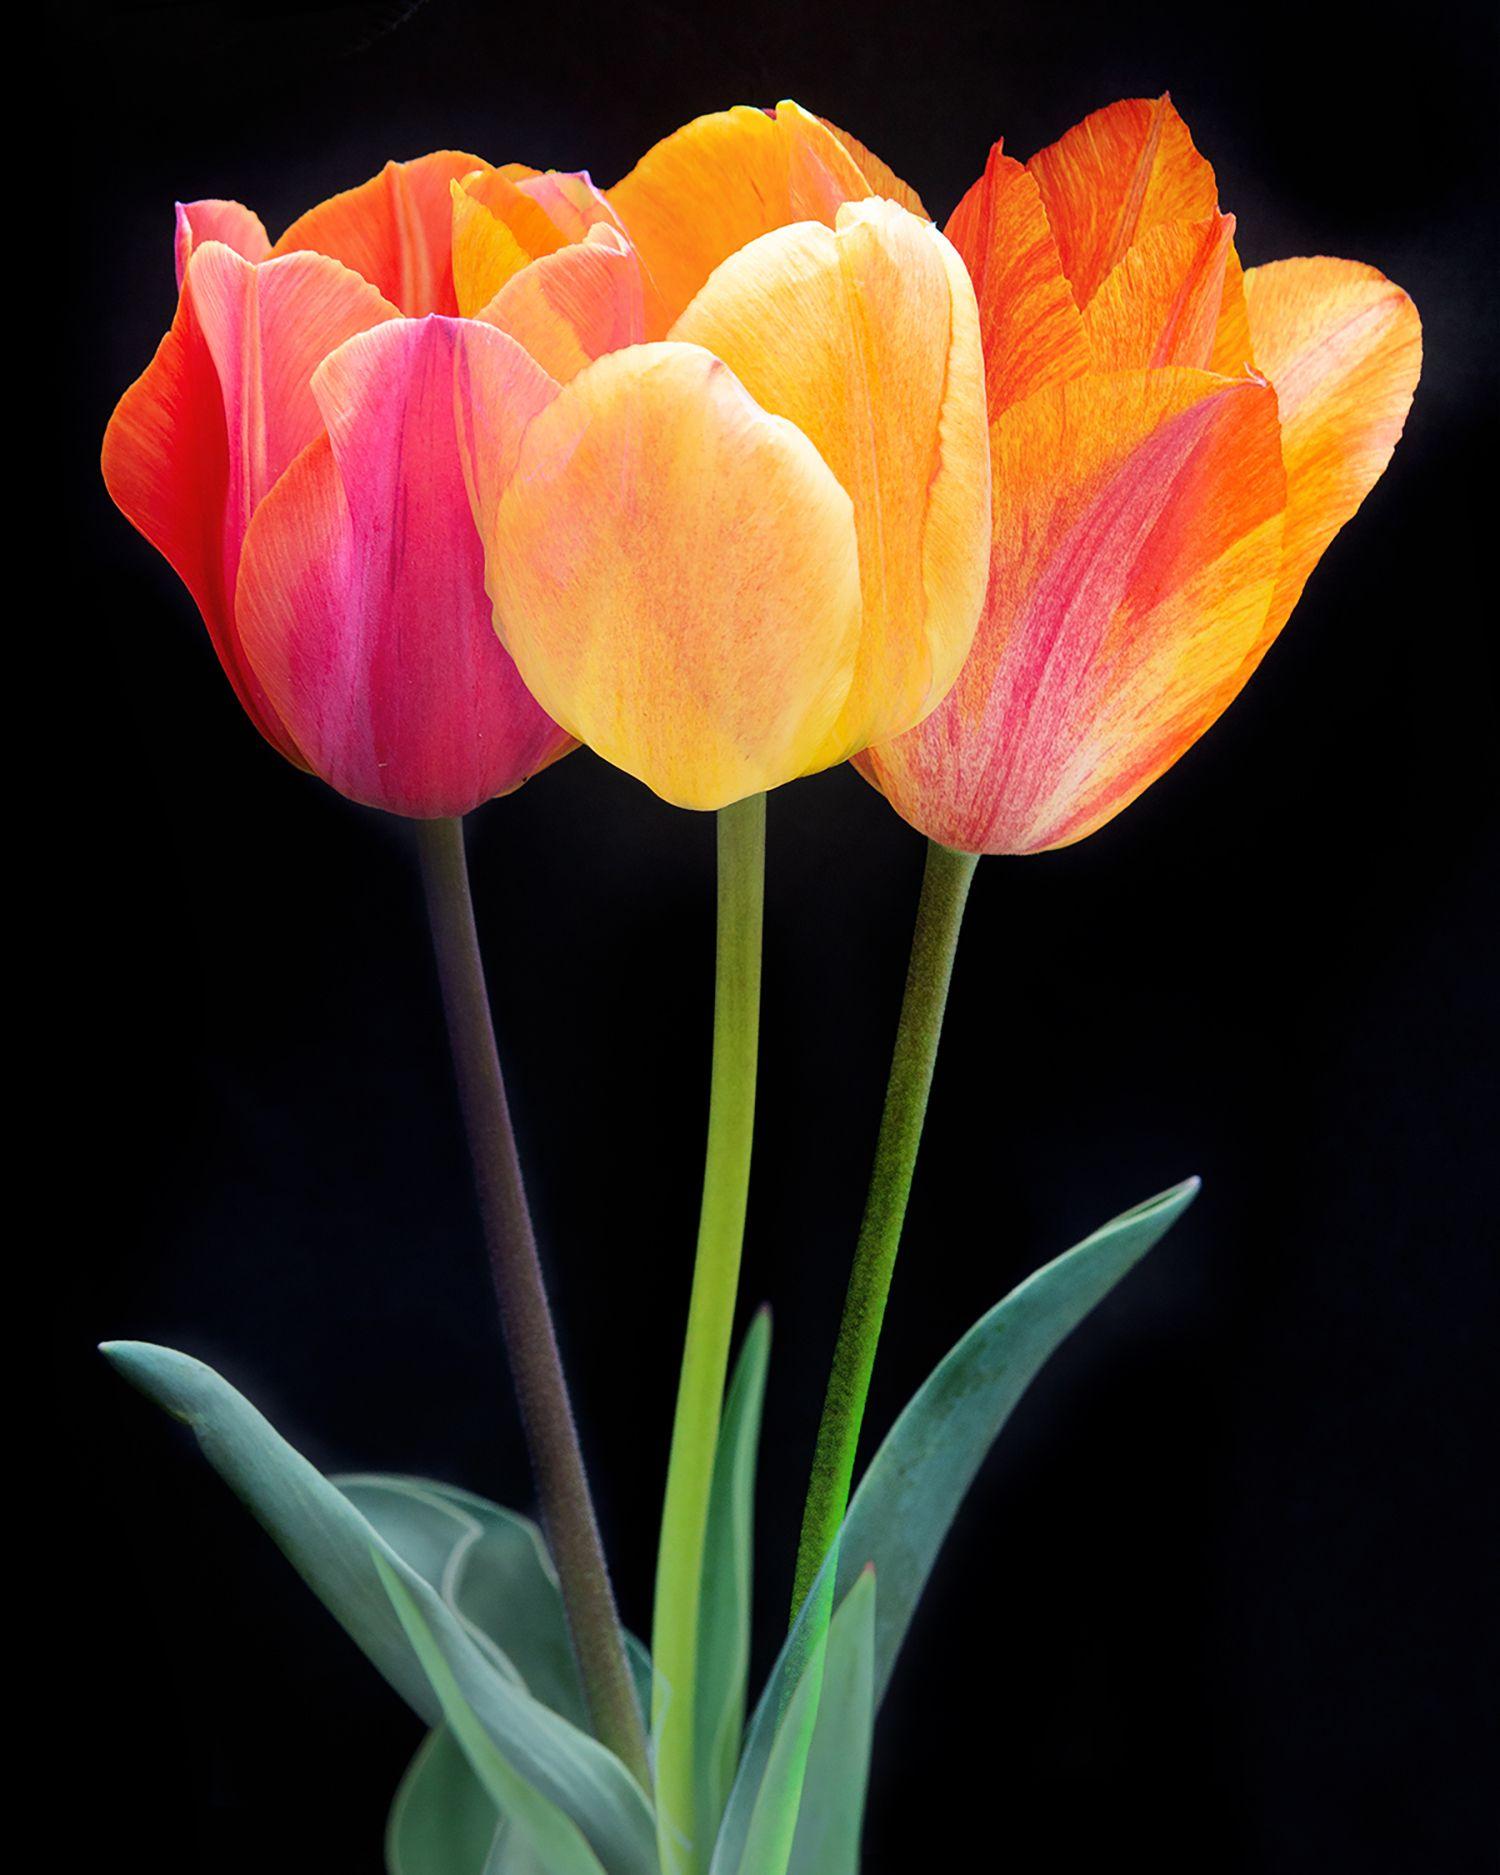 Color Photograph Michael Filonow - Triple tulipe, photographie, jet d'encre d'art